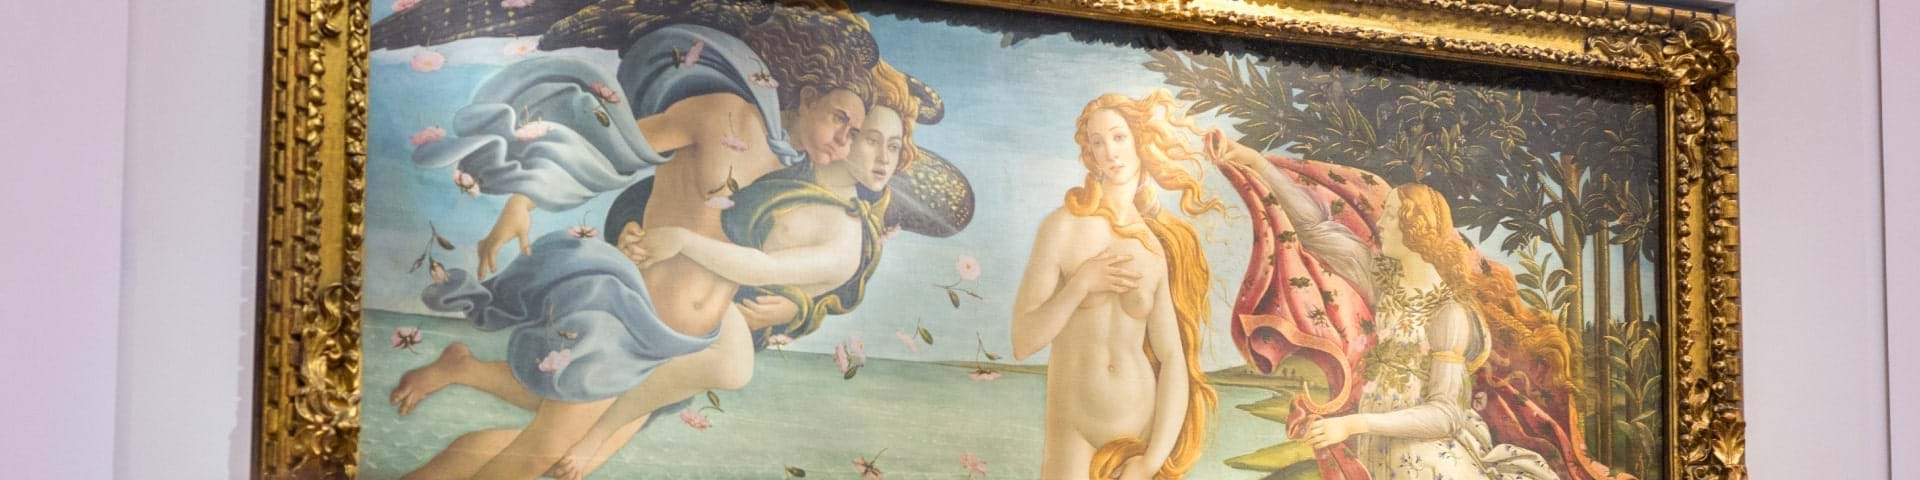 The Uffizi Gallery Tours